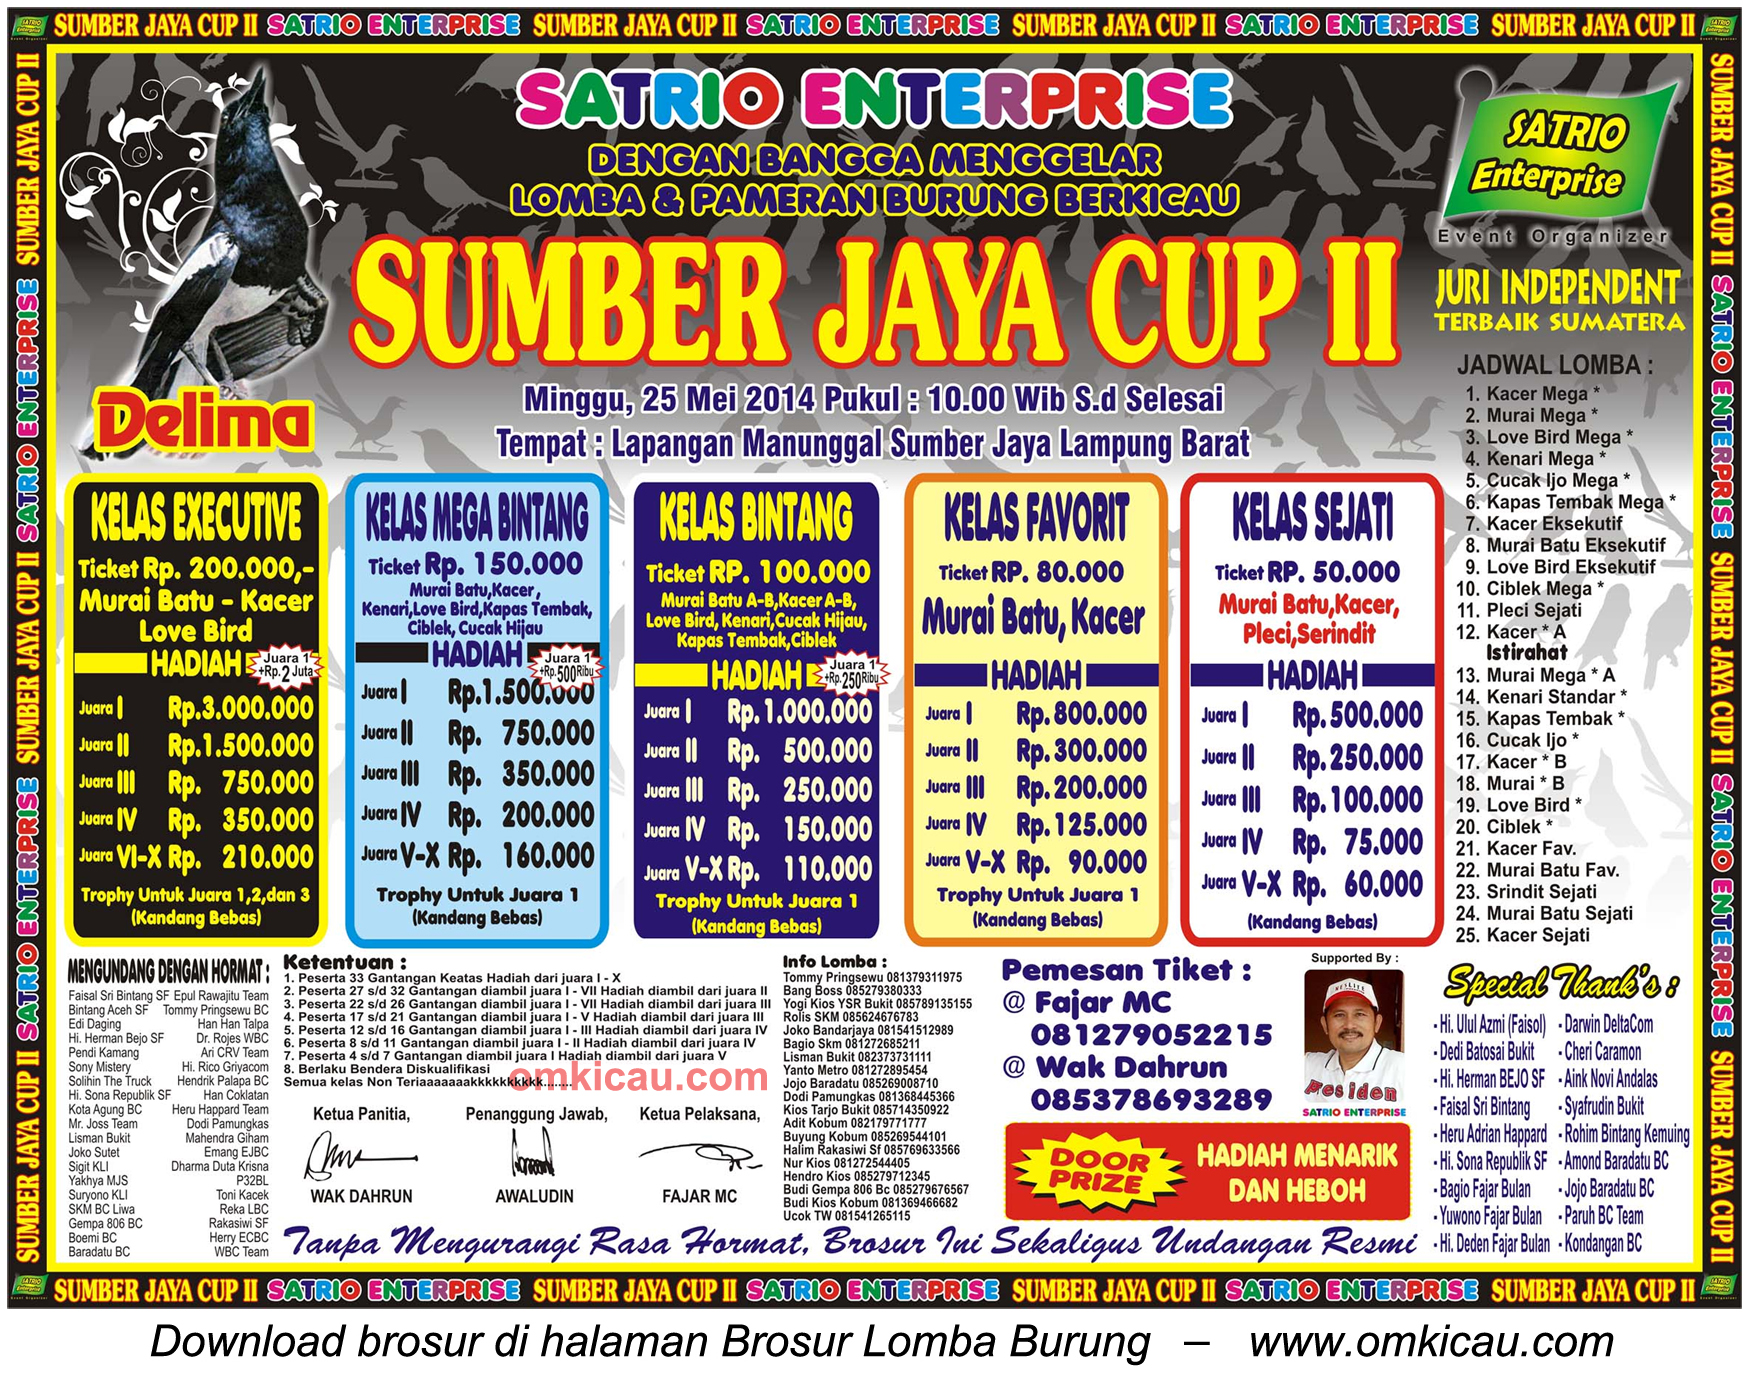 Brosur Lomba Burung Berkicau Sumber Jaya Cup II, Lampung Barat, 25 Mei 2014